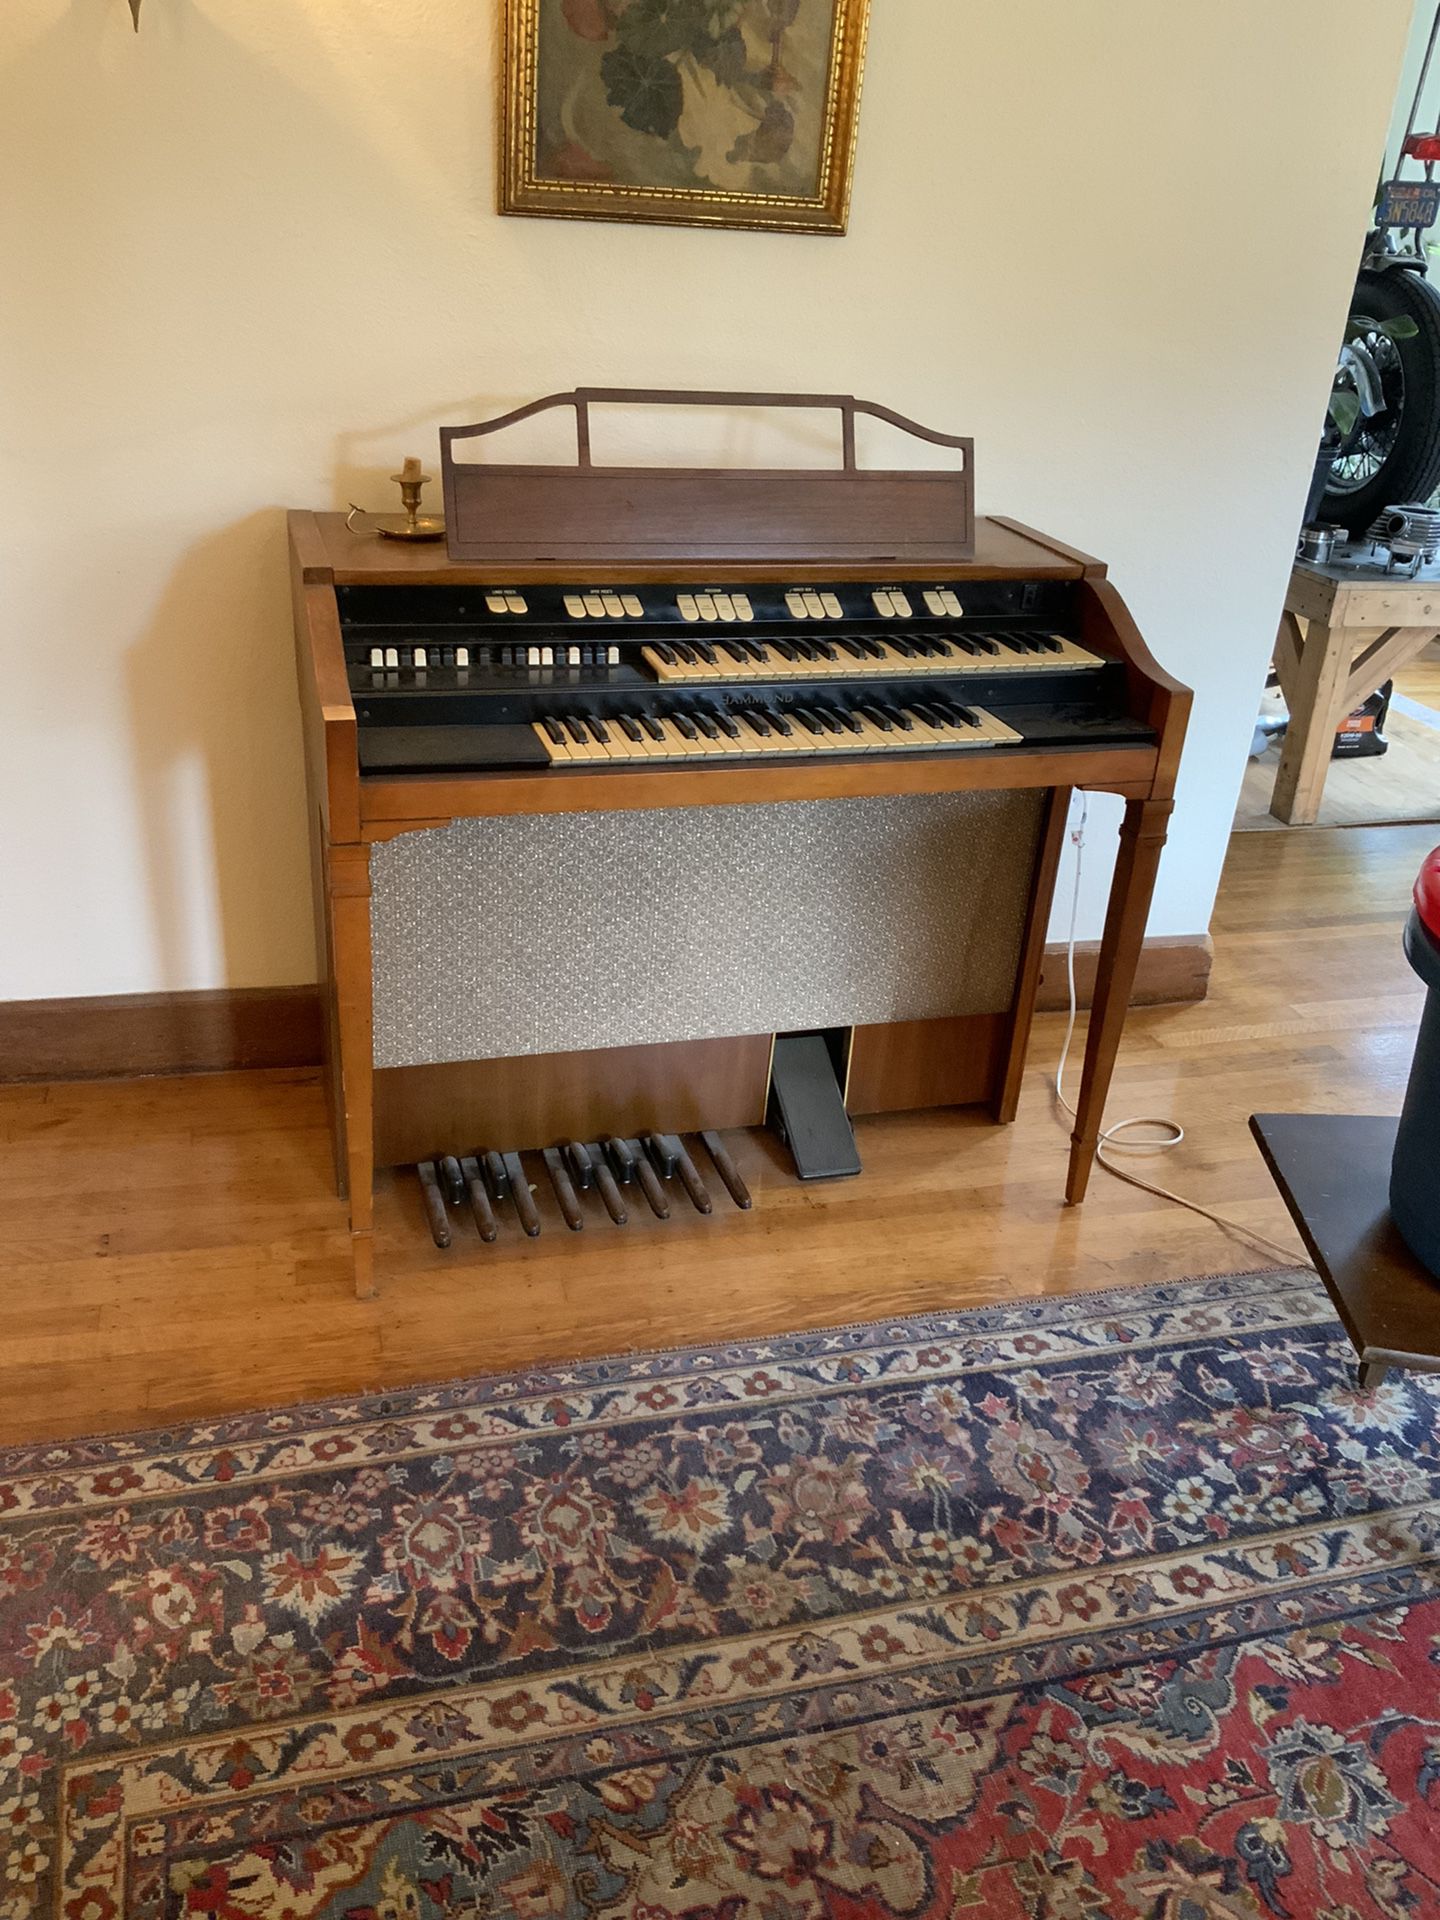 Vintage Hammond Electric Organ - Works! free! 